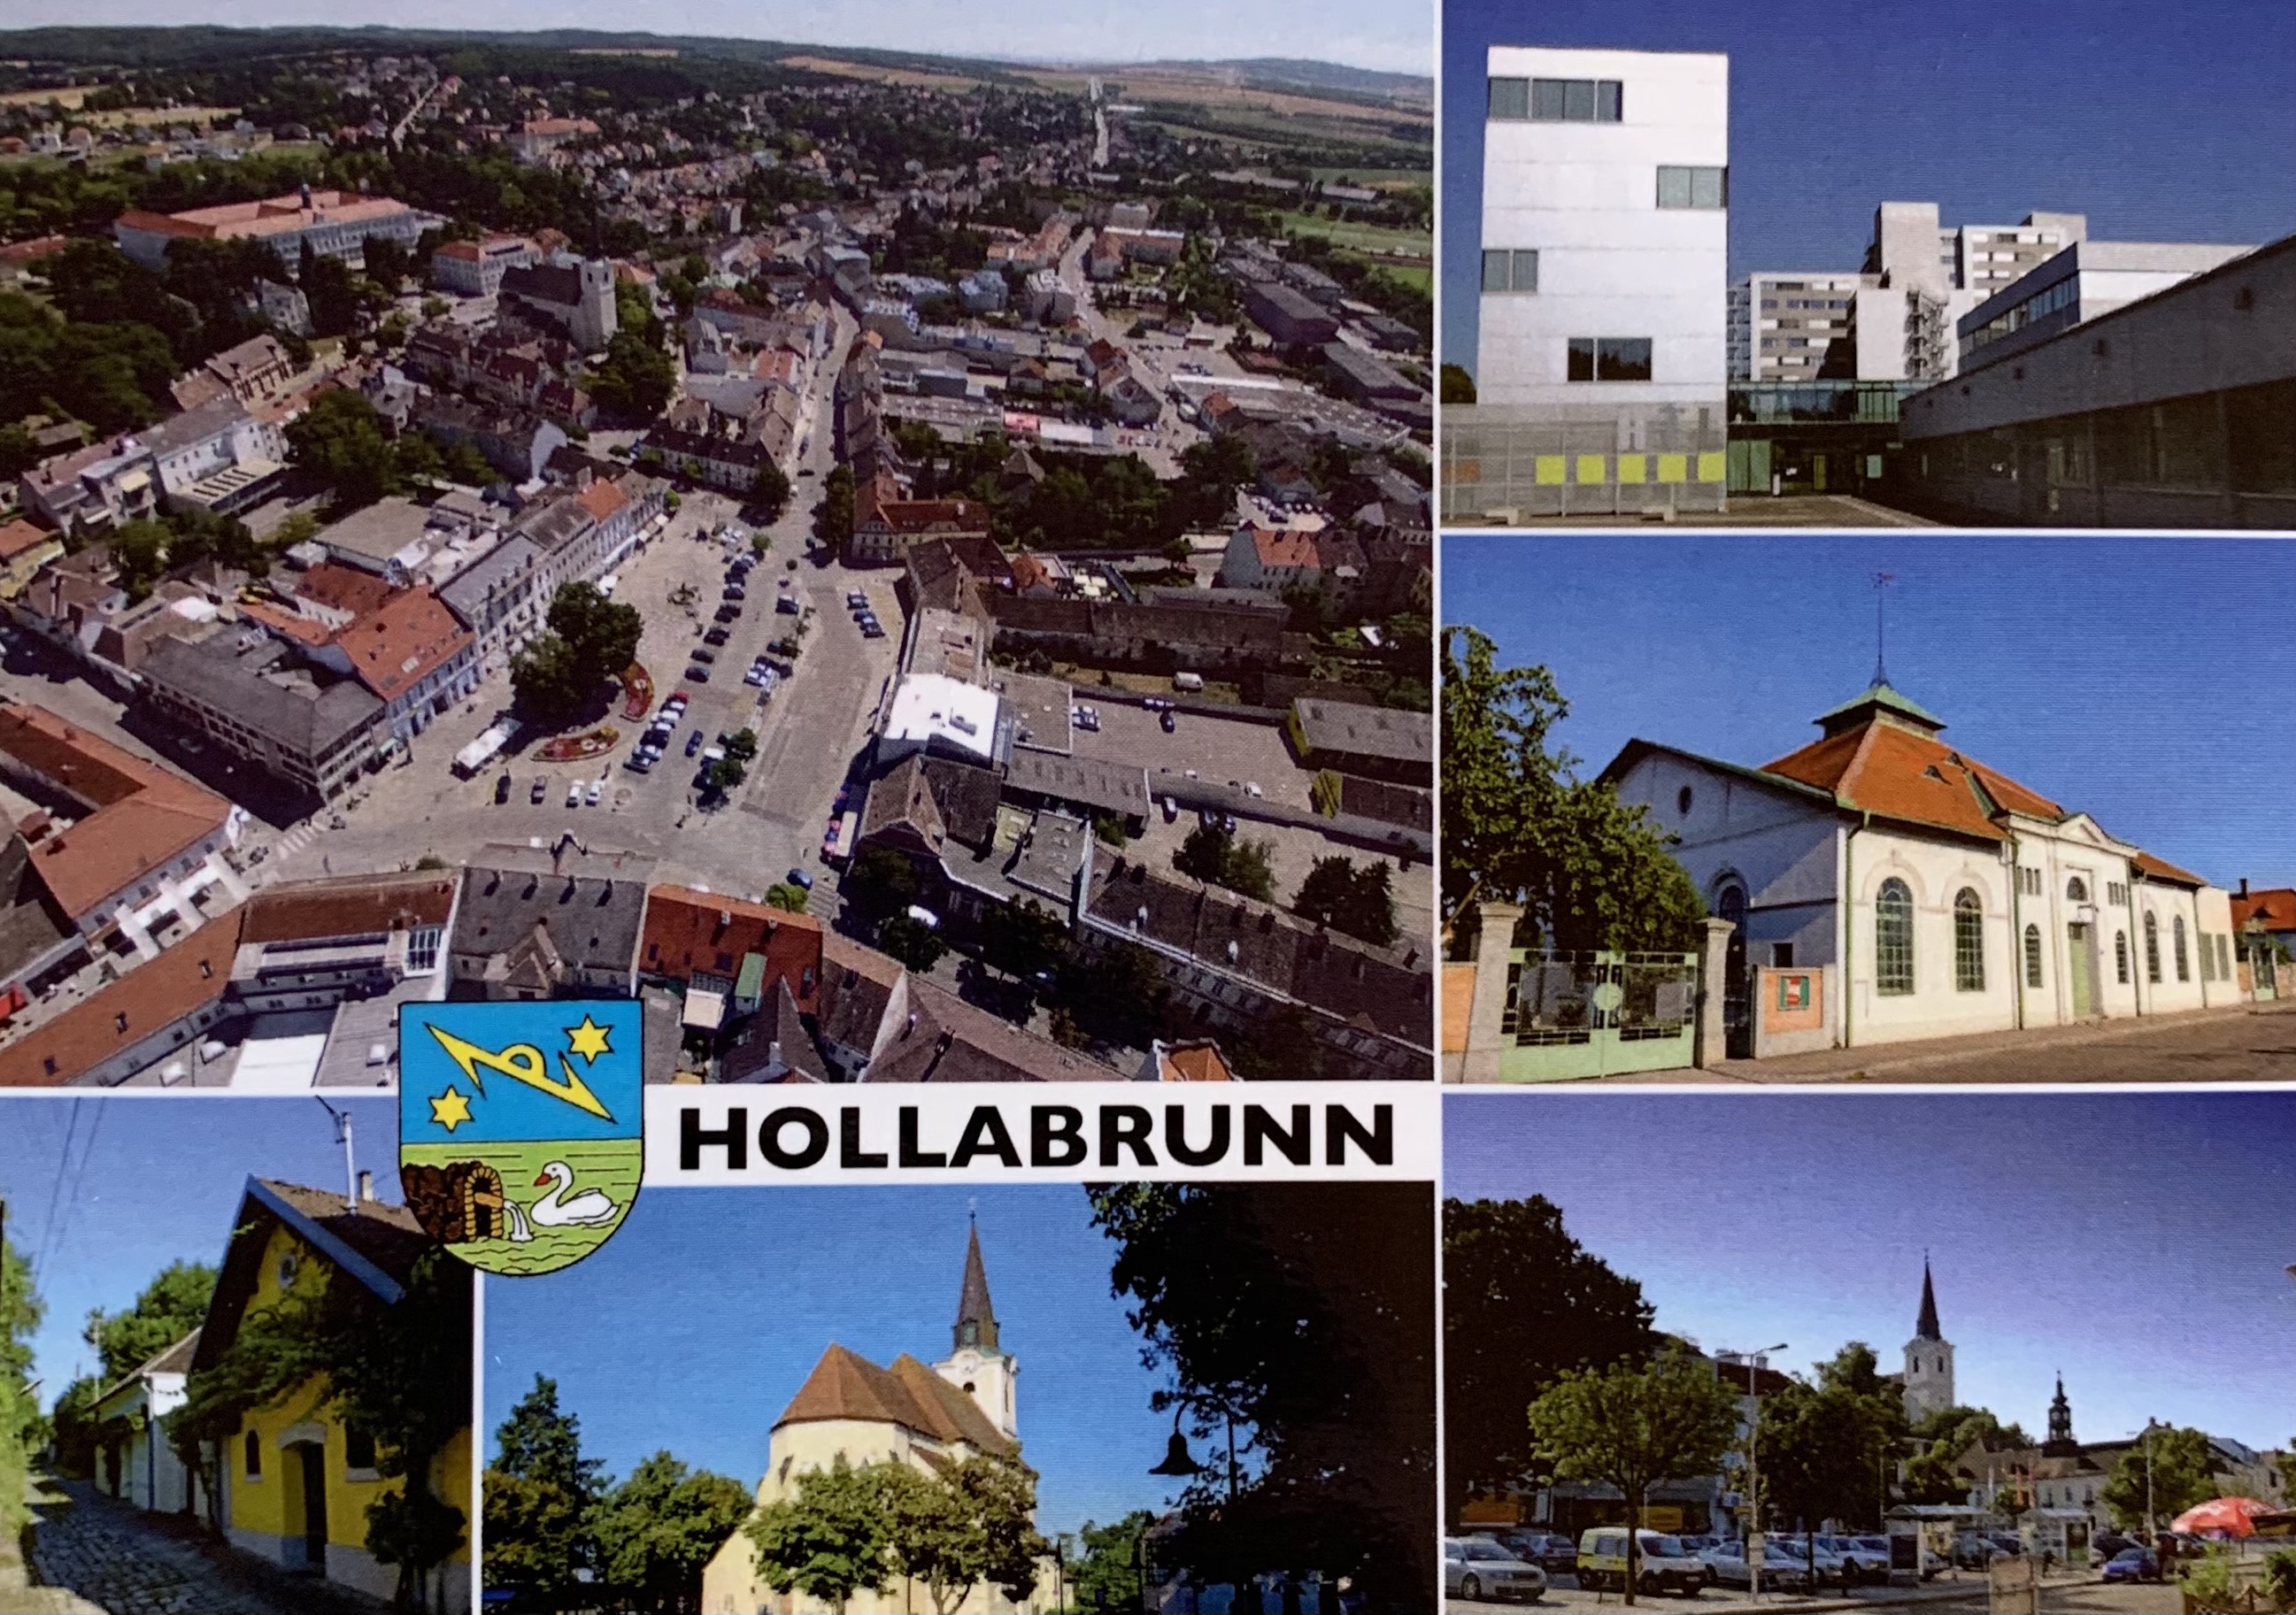 AK - Hollabrunn 01-2020-01A